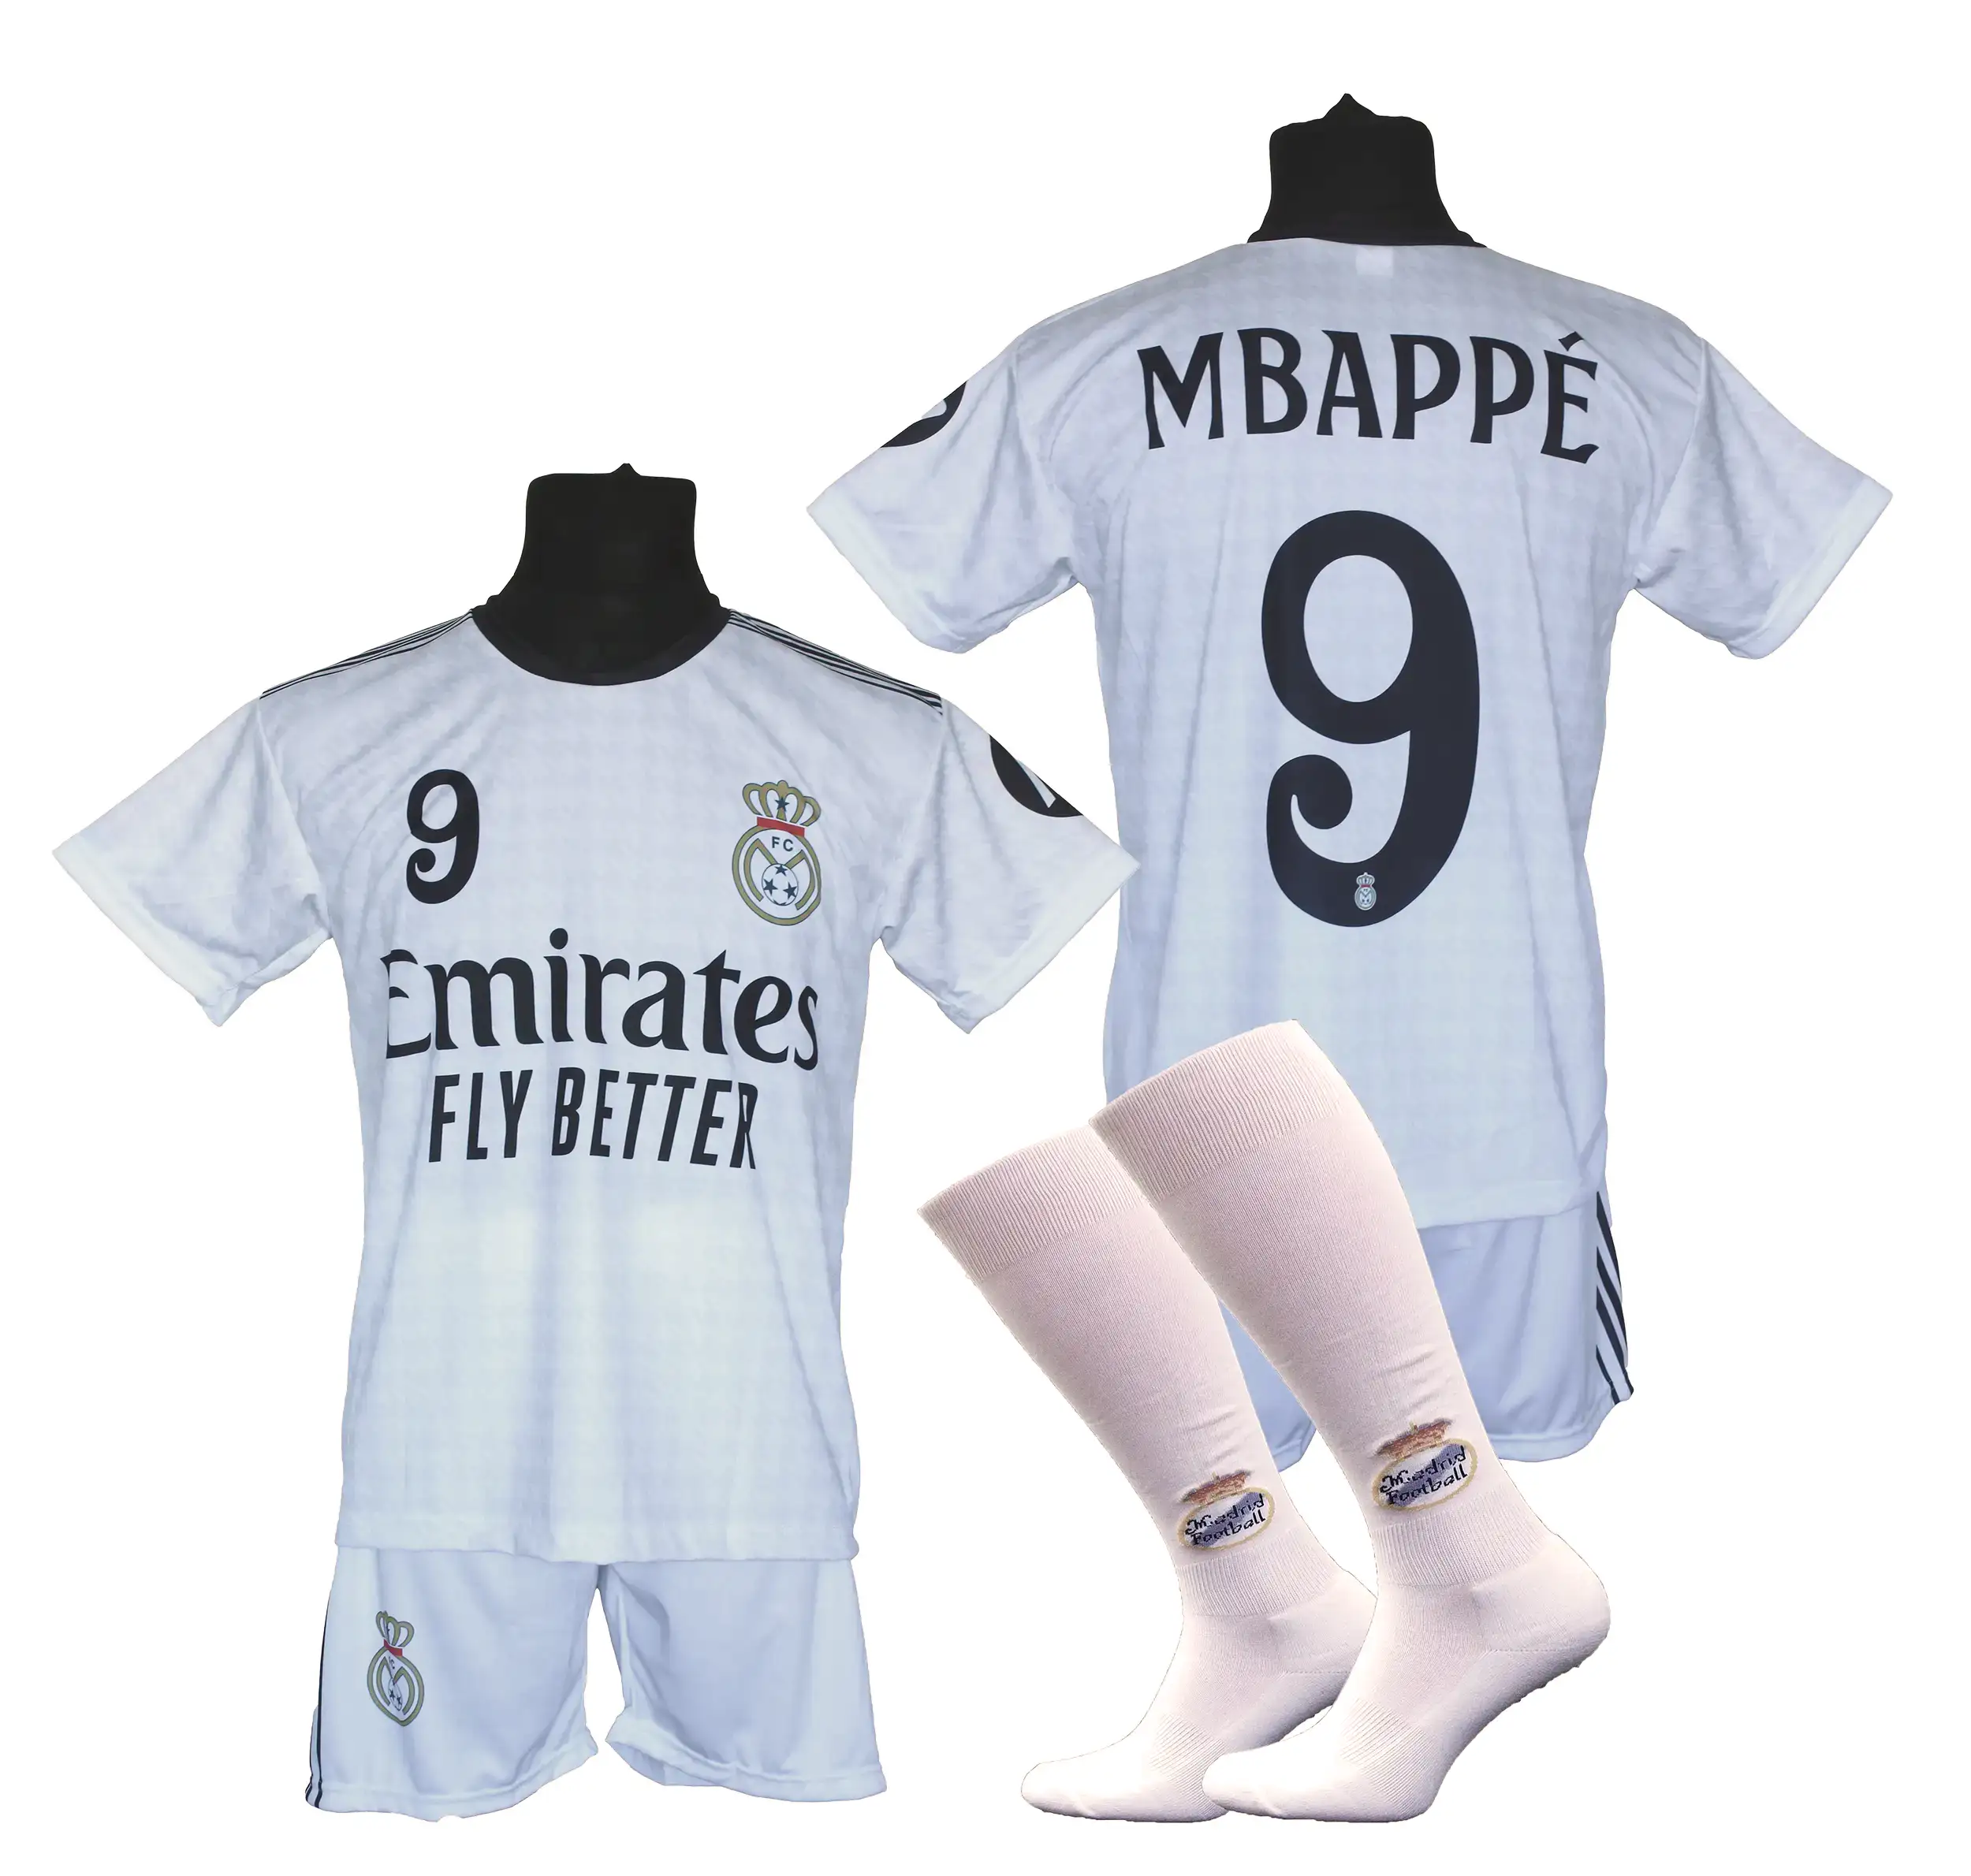 Strój piłkarski Mbappe dla dzieci